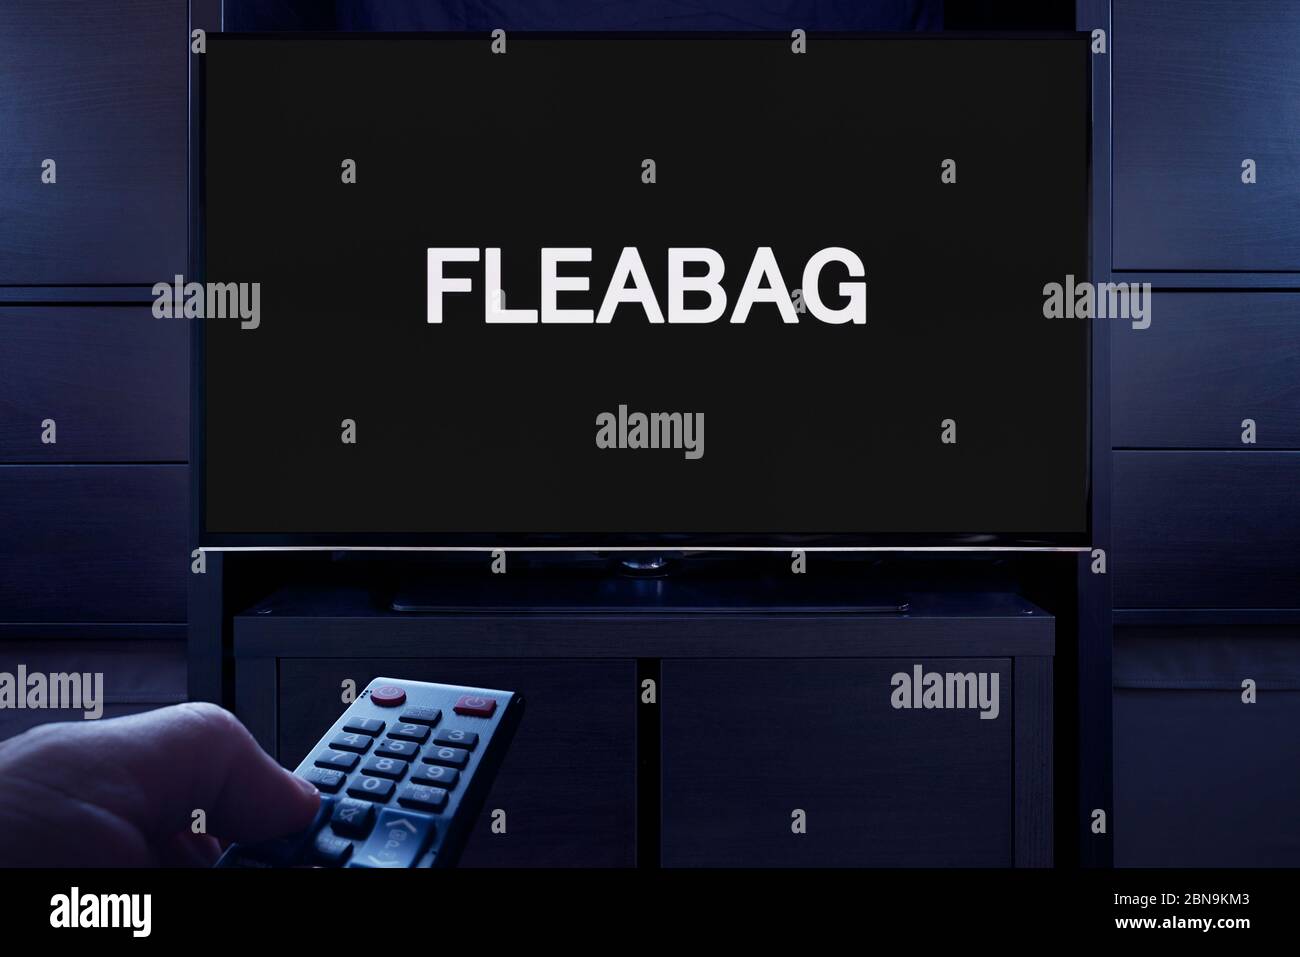 Un homme pointe une télécommande de télévision sur le téléviseur qui affiche l'écran principal Fleabag (usage éditorial uniquement). Banque D'Images